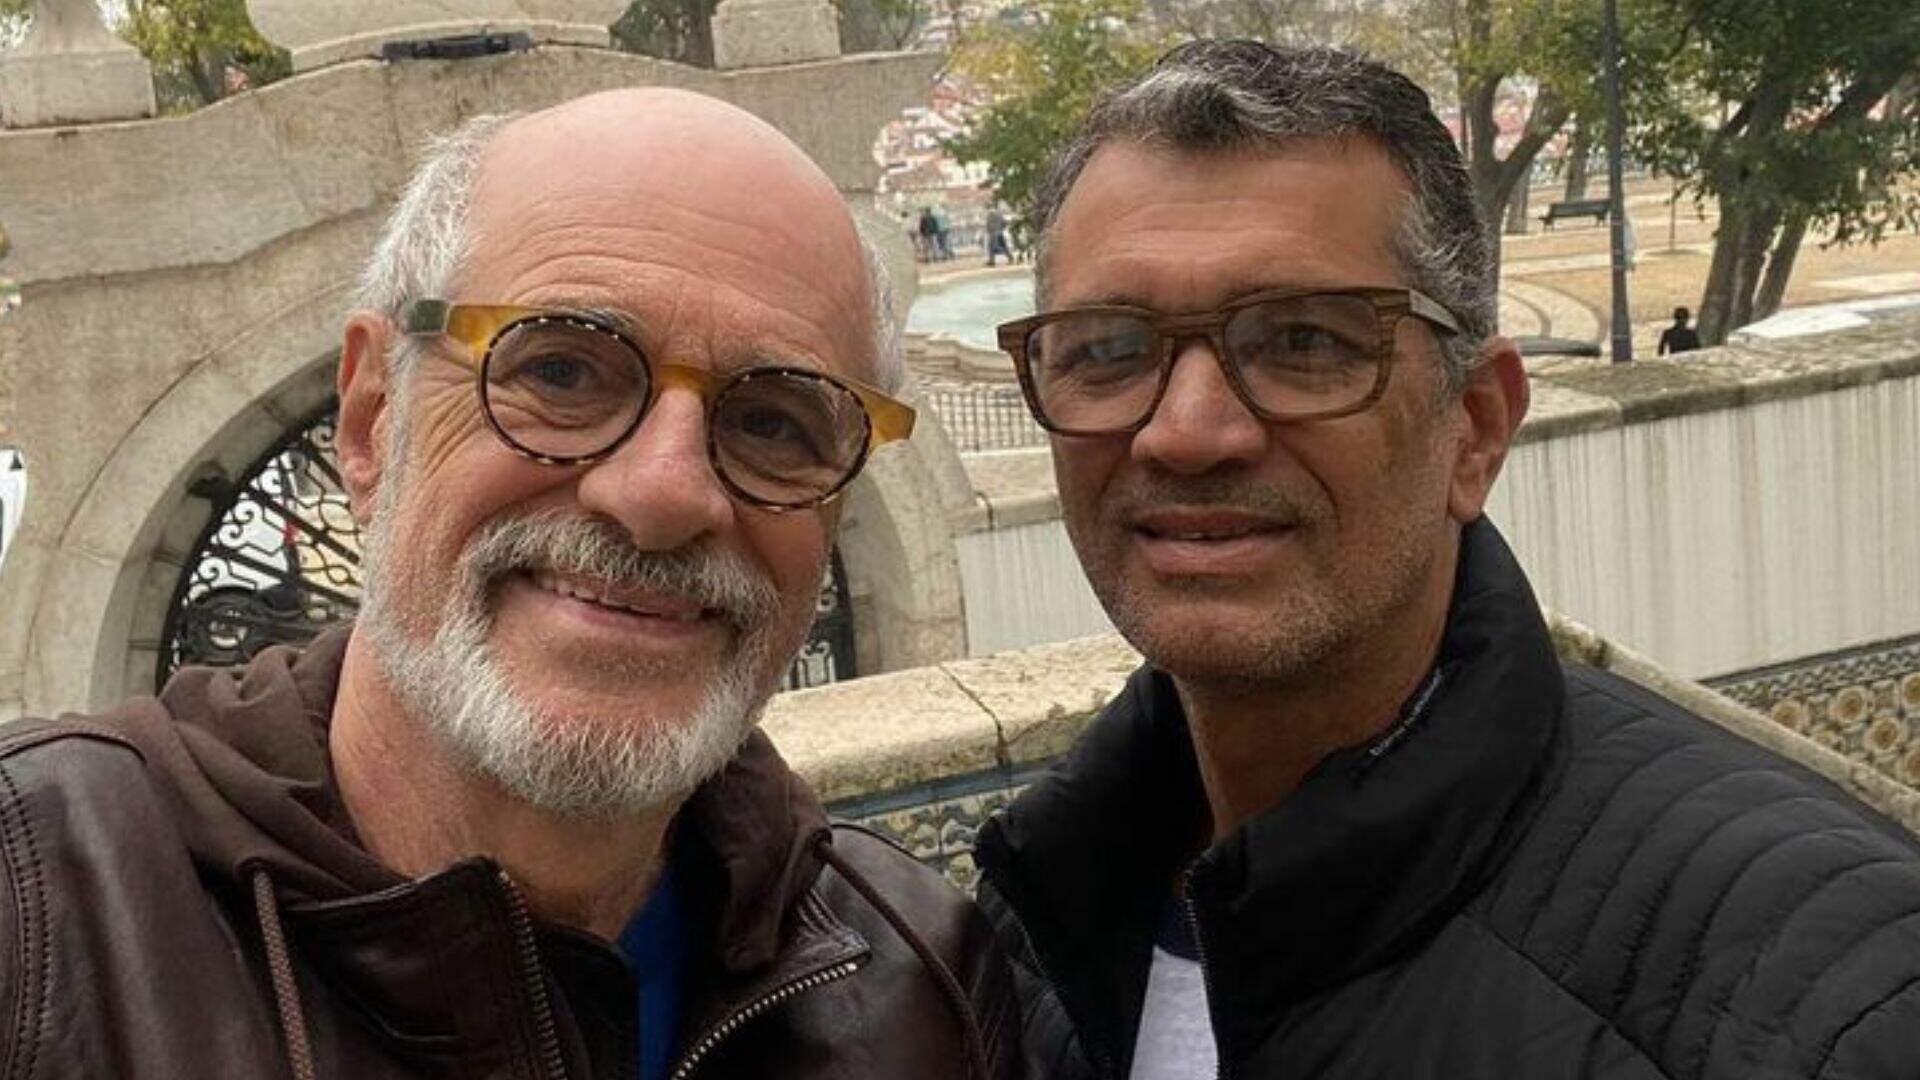 O amor está no ar! Aos 70 anos, ator Marcos Caruso troca alianças com parceiro em Portugal - Metropolitana FM